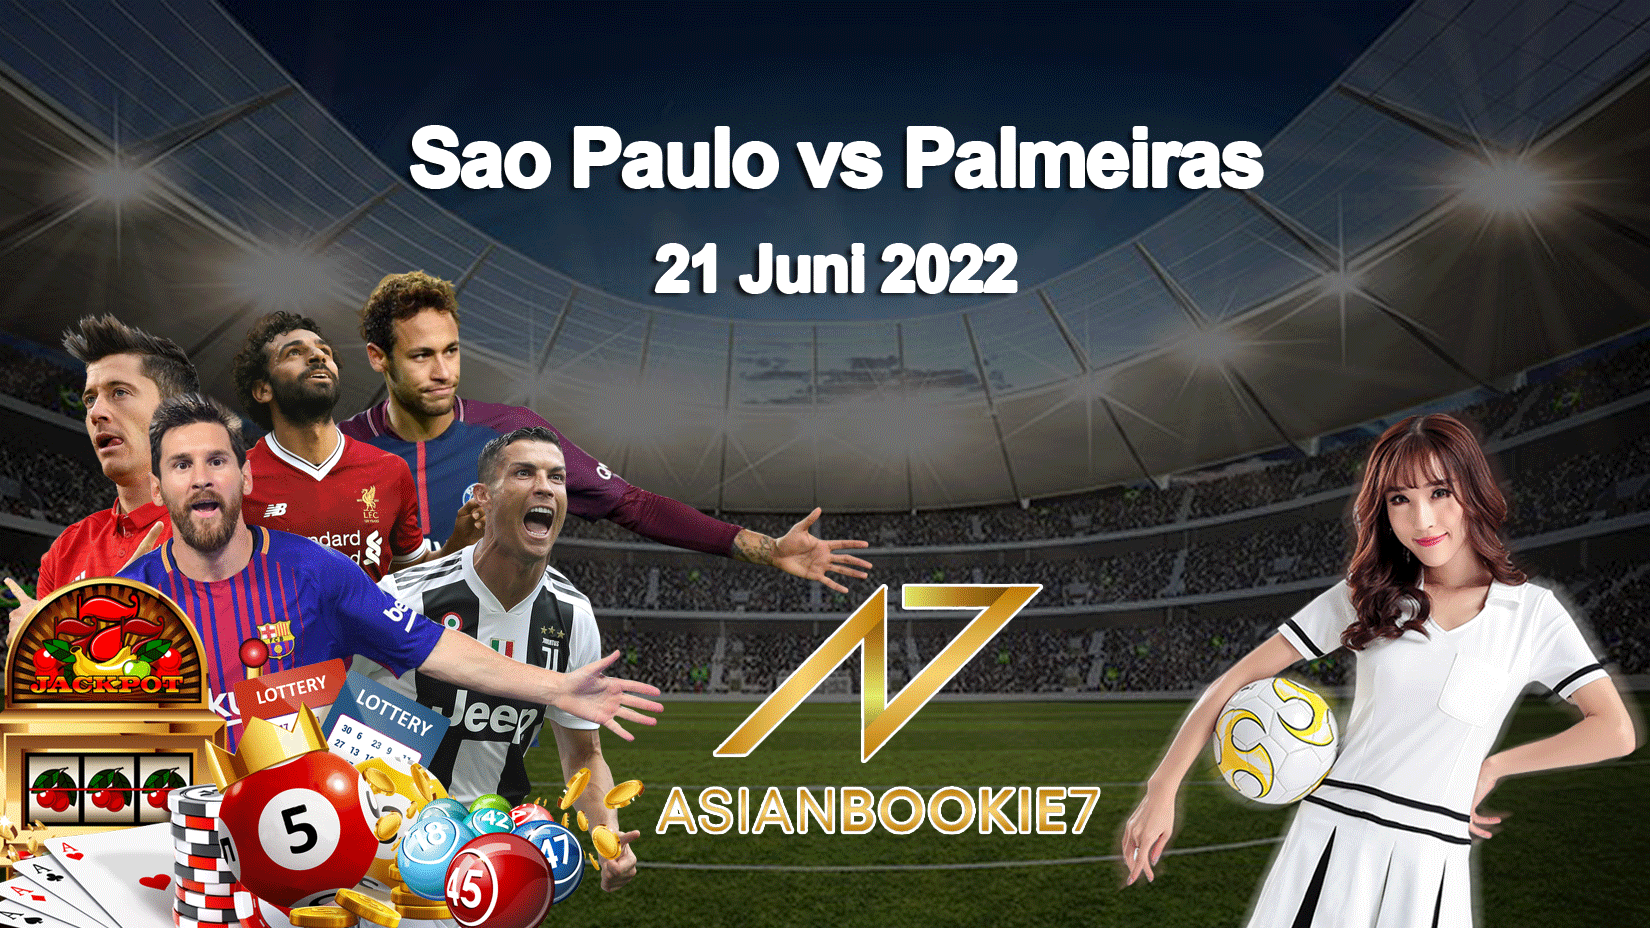 Prediksi Sao Paulo vs Palmeiras 21 Juni 2022